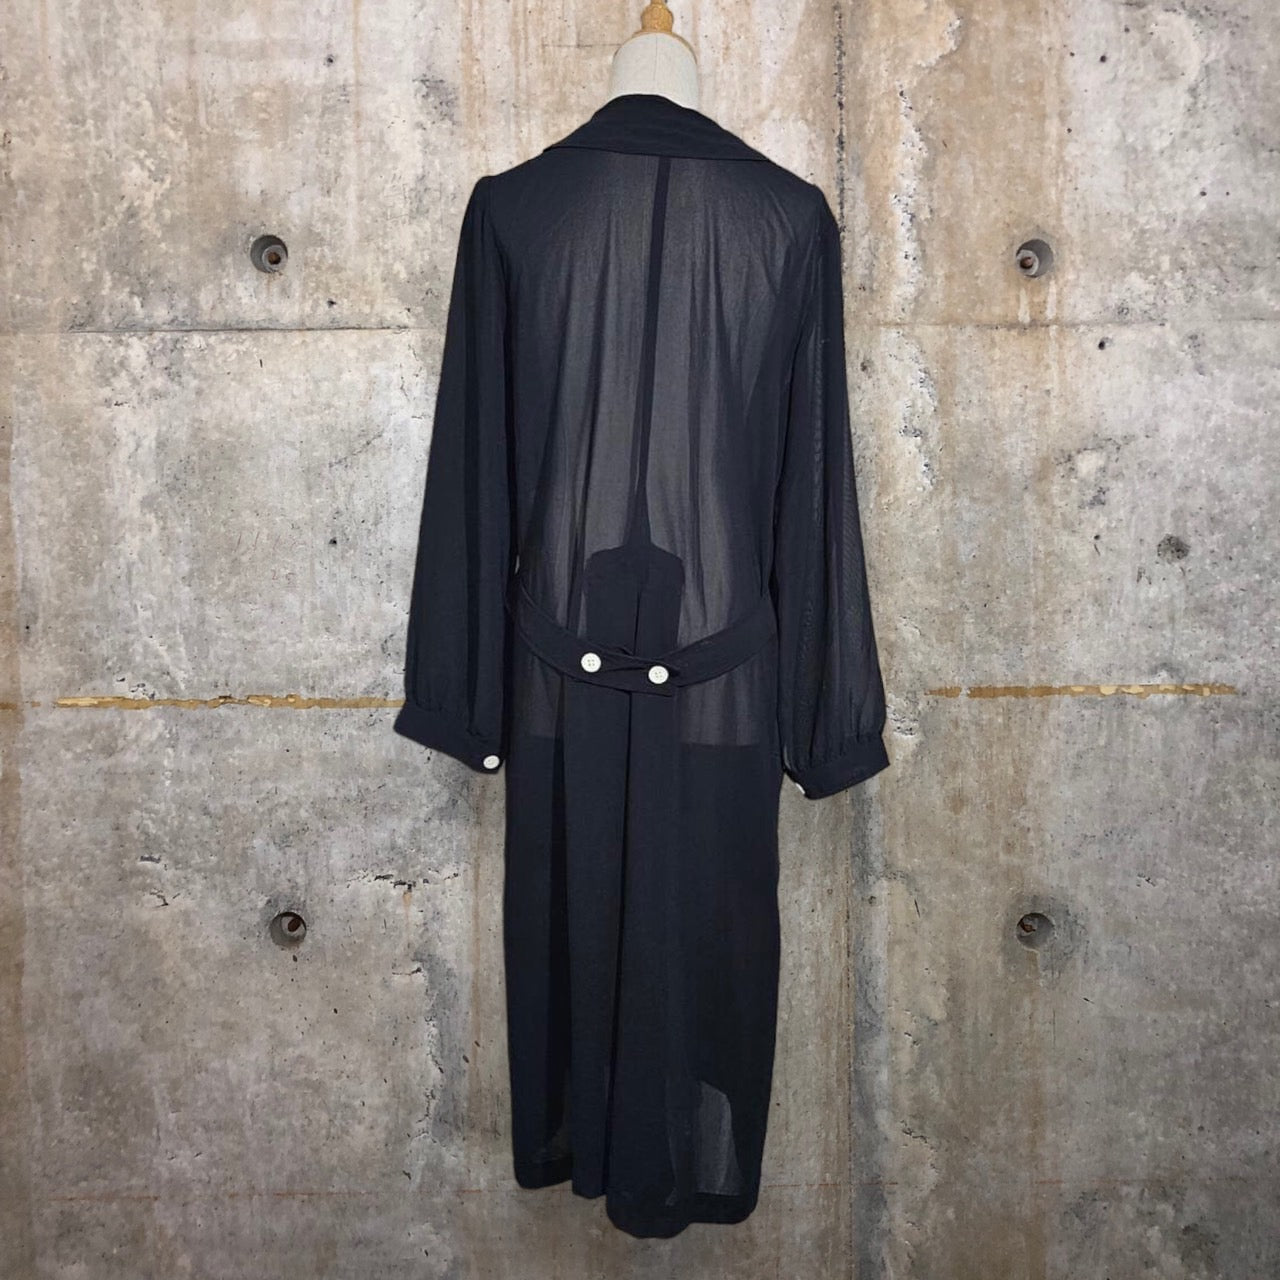 robe de chambre COMME des GARCONS(ローブドシャンブルコムデギャルソン) 90's See-through long coat/シースルーロングコート/ワンピース/川久保玲 RO-100080 SIZE FREE ブラック AD1994